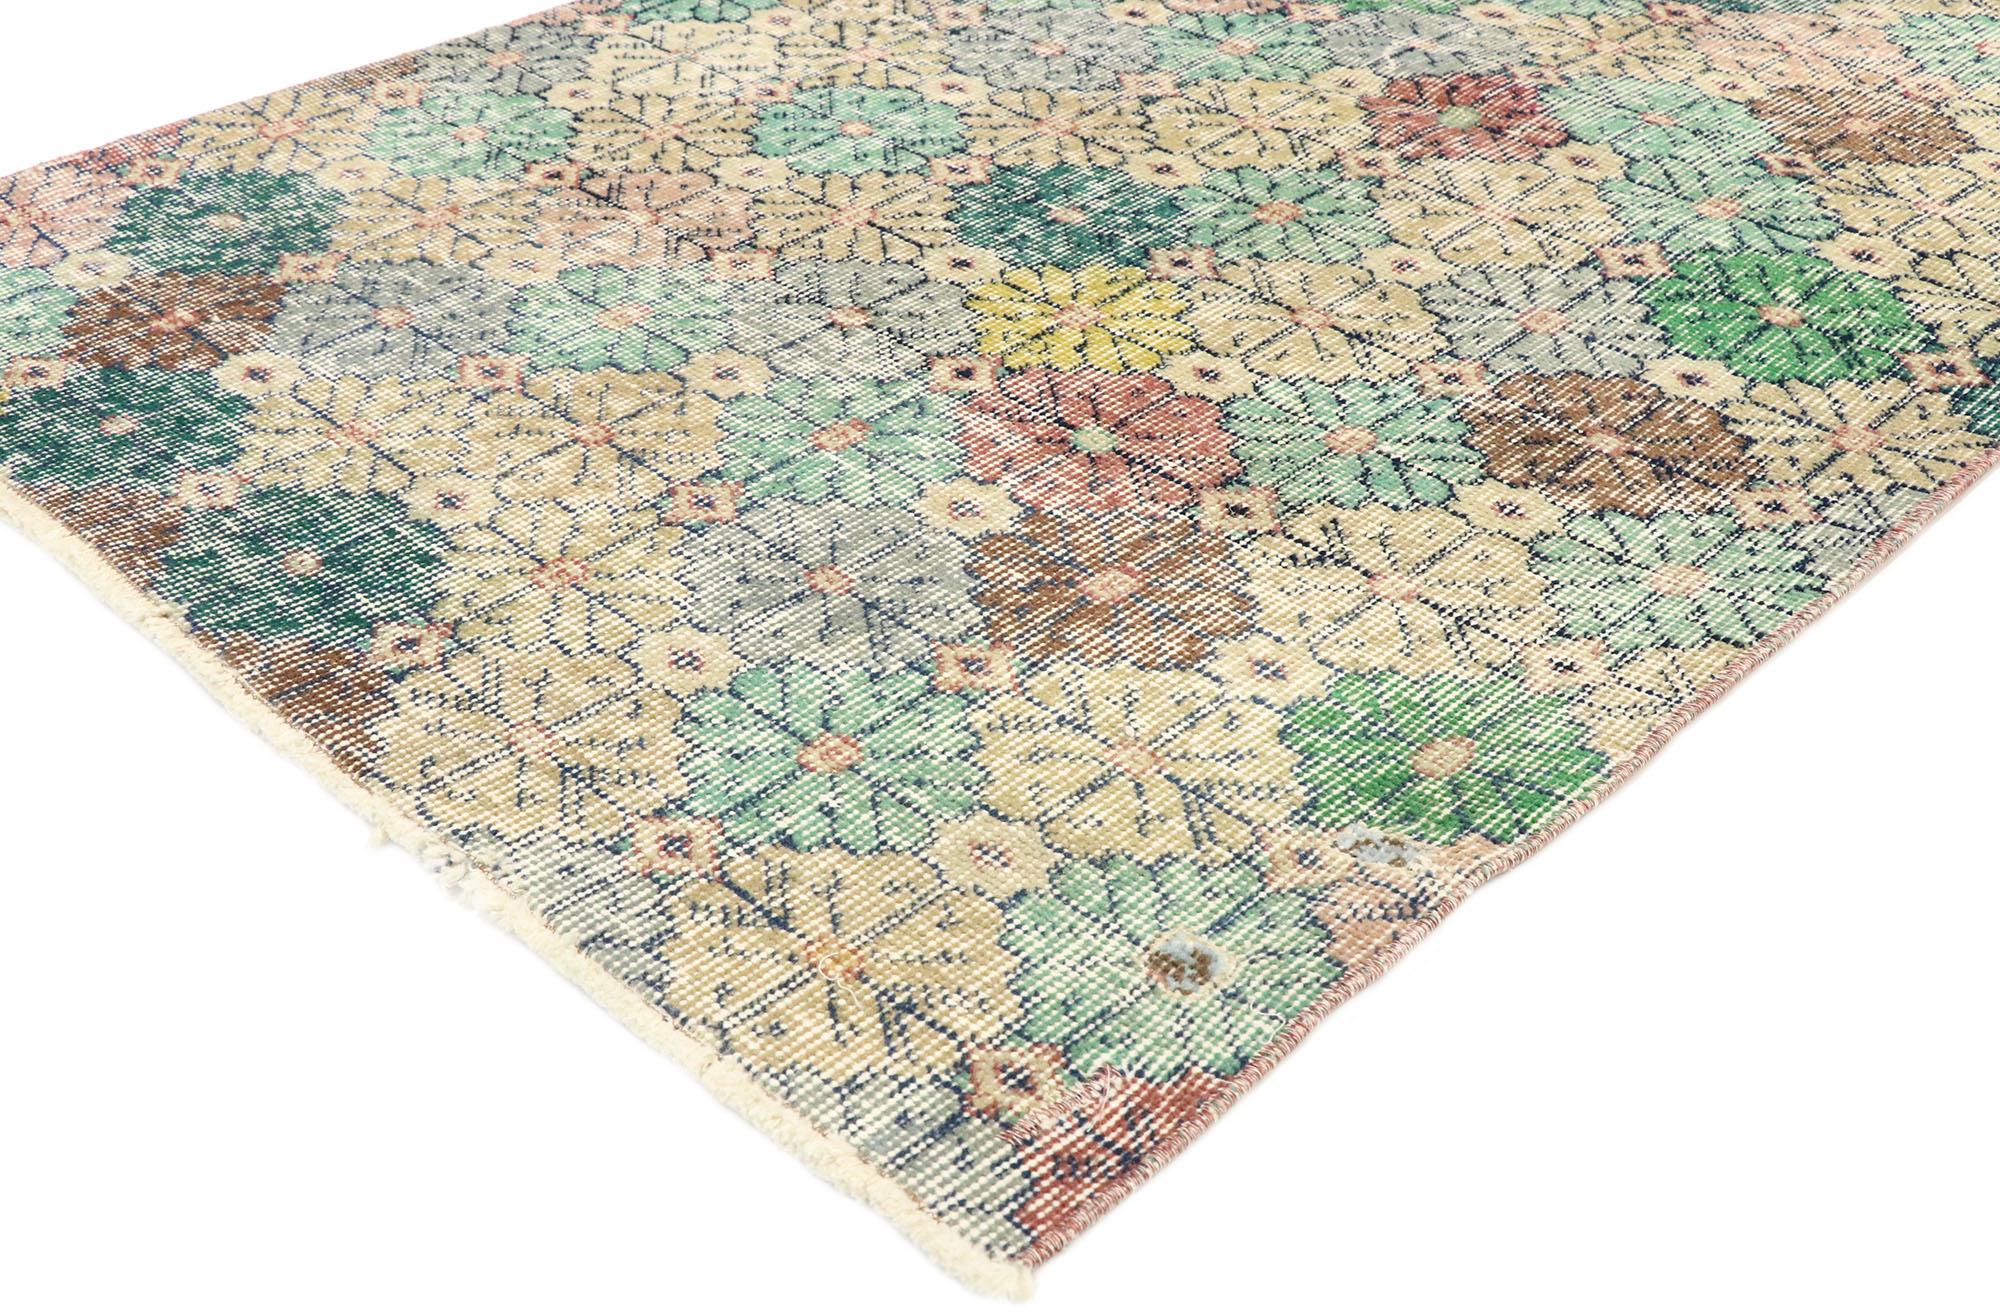 51893, Zeki Muren, tapis vintage turc Sivas en mauvais état, style chintz anglais. Équilibrant un design floral intemporel avec une sensibilité traditionnelle et une patine affectueusement usée par le temps, ce tapis turc vintage Sivas en laine